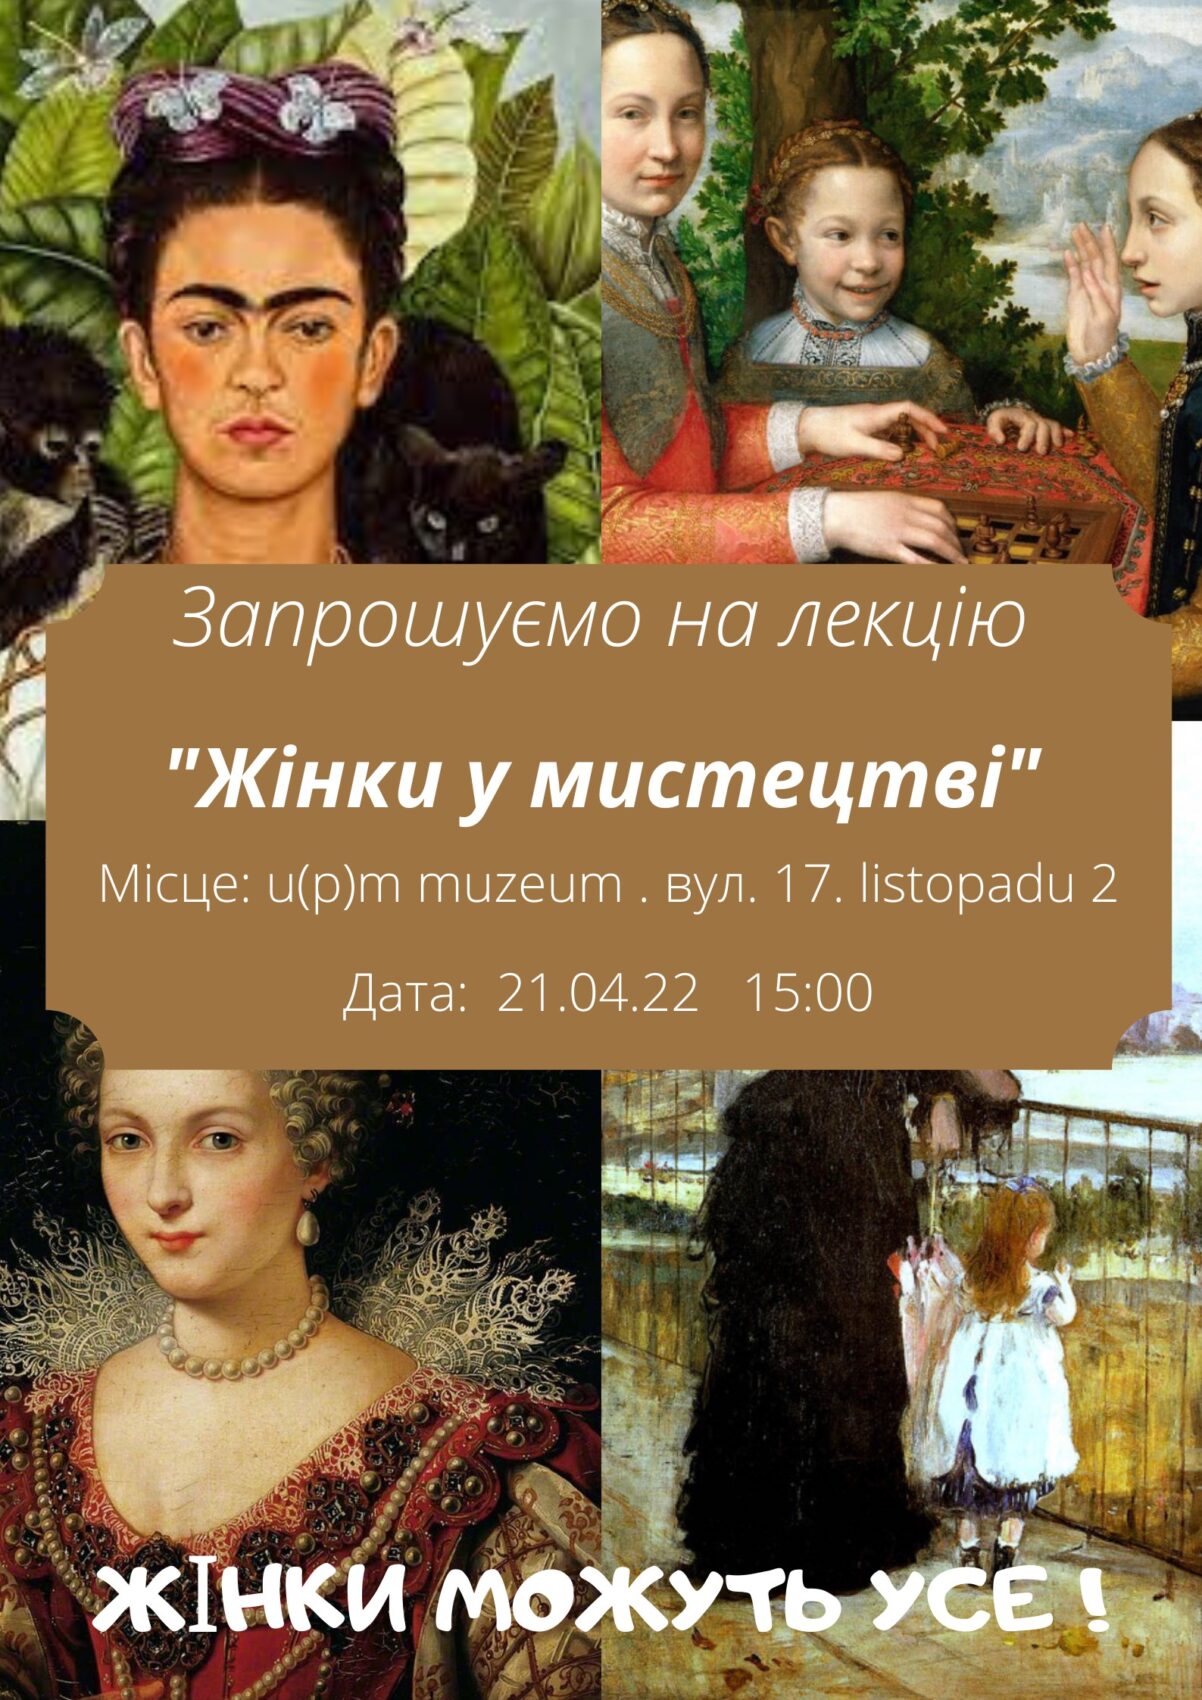 Plakát v ukrajinštině, pozvánka na přednášku o silných ženách v umění